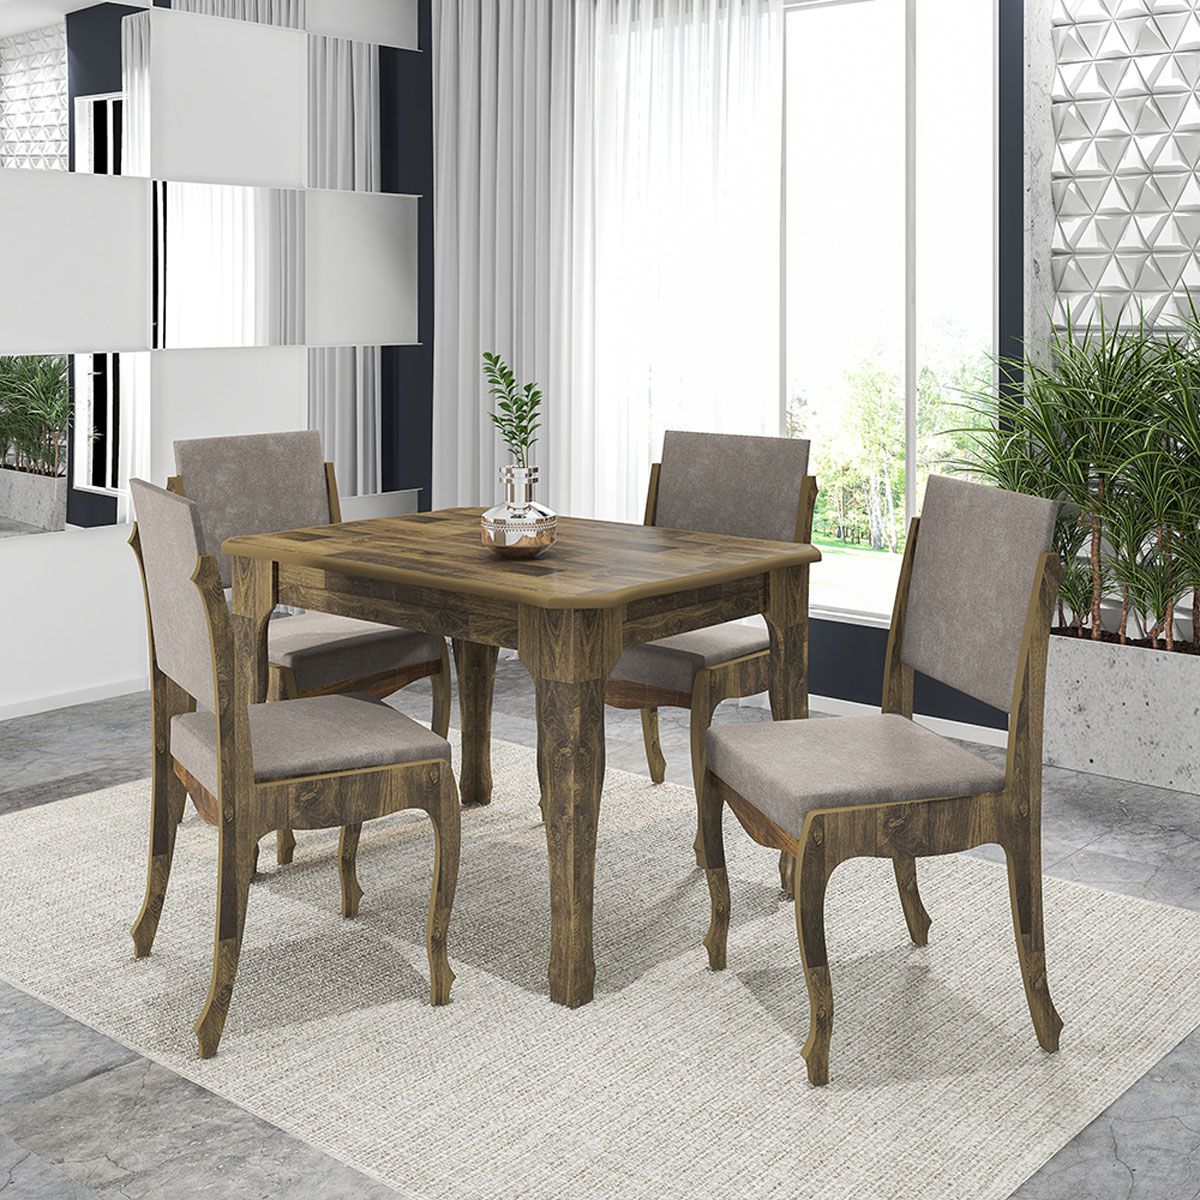 Mesa de Jantar com 4 Cadeiras Onix Amadeirado com Pena Caramelo - RV Móveis